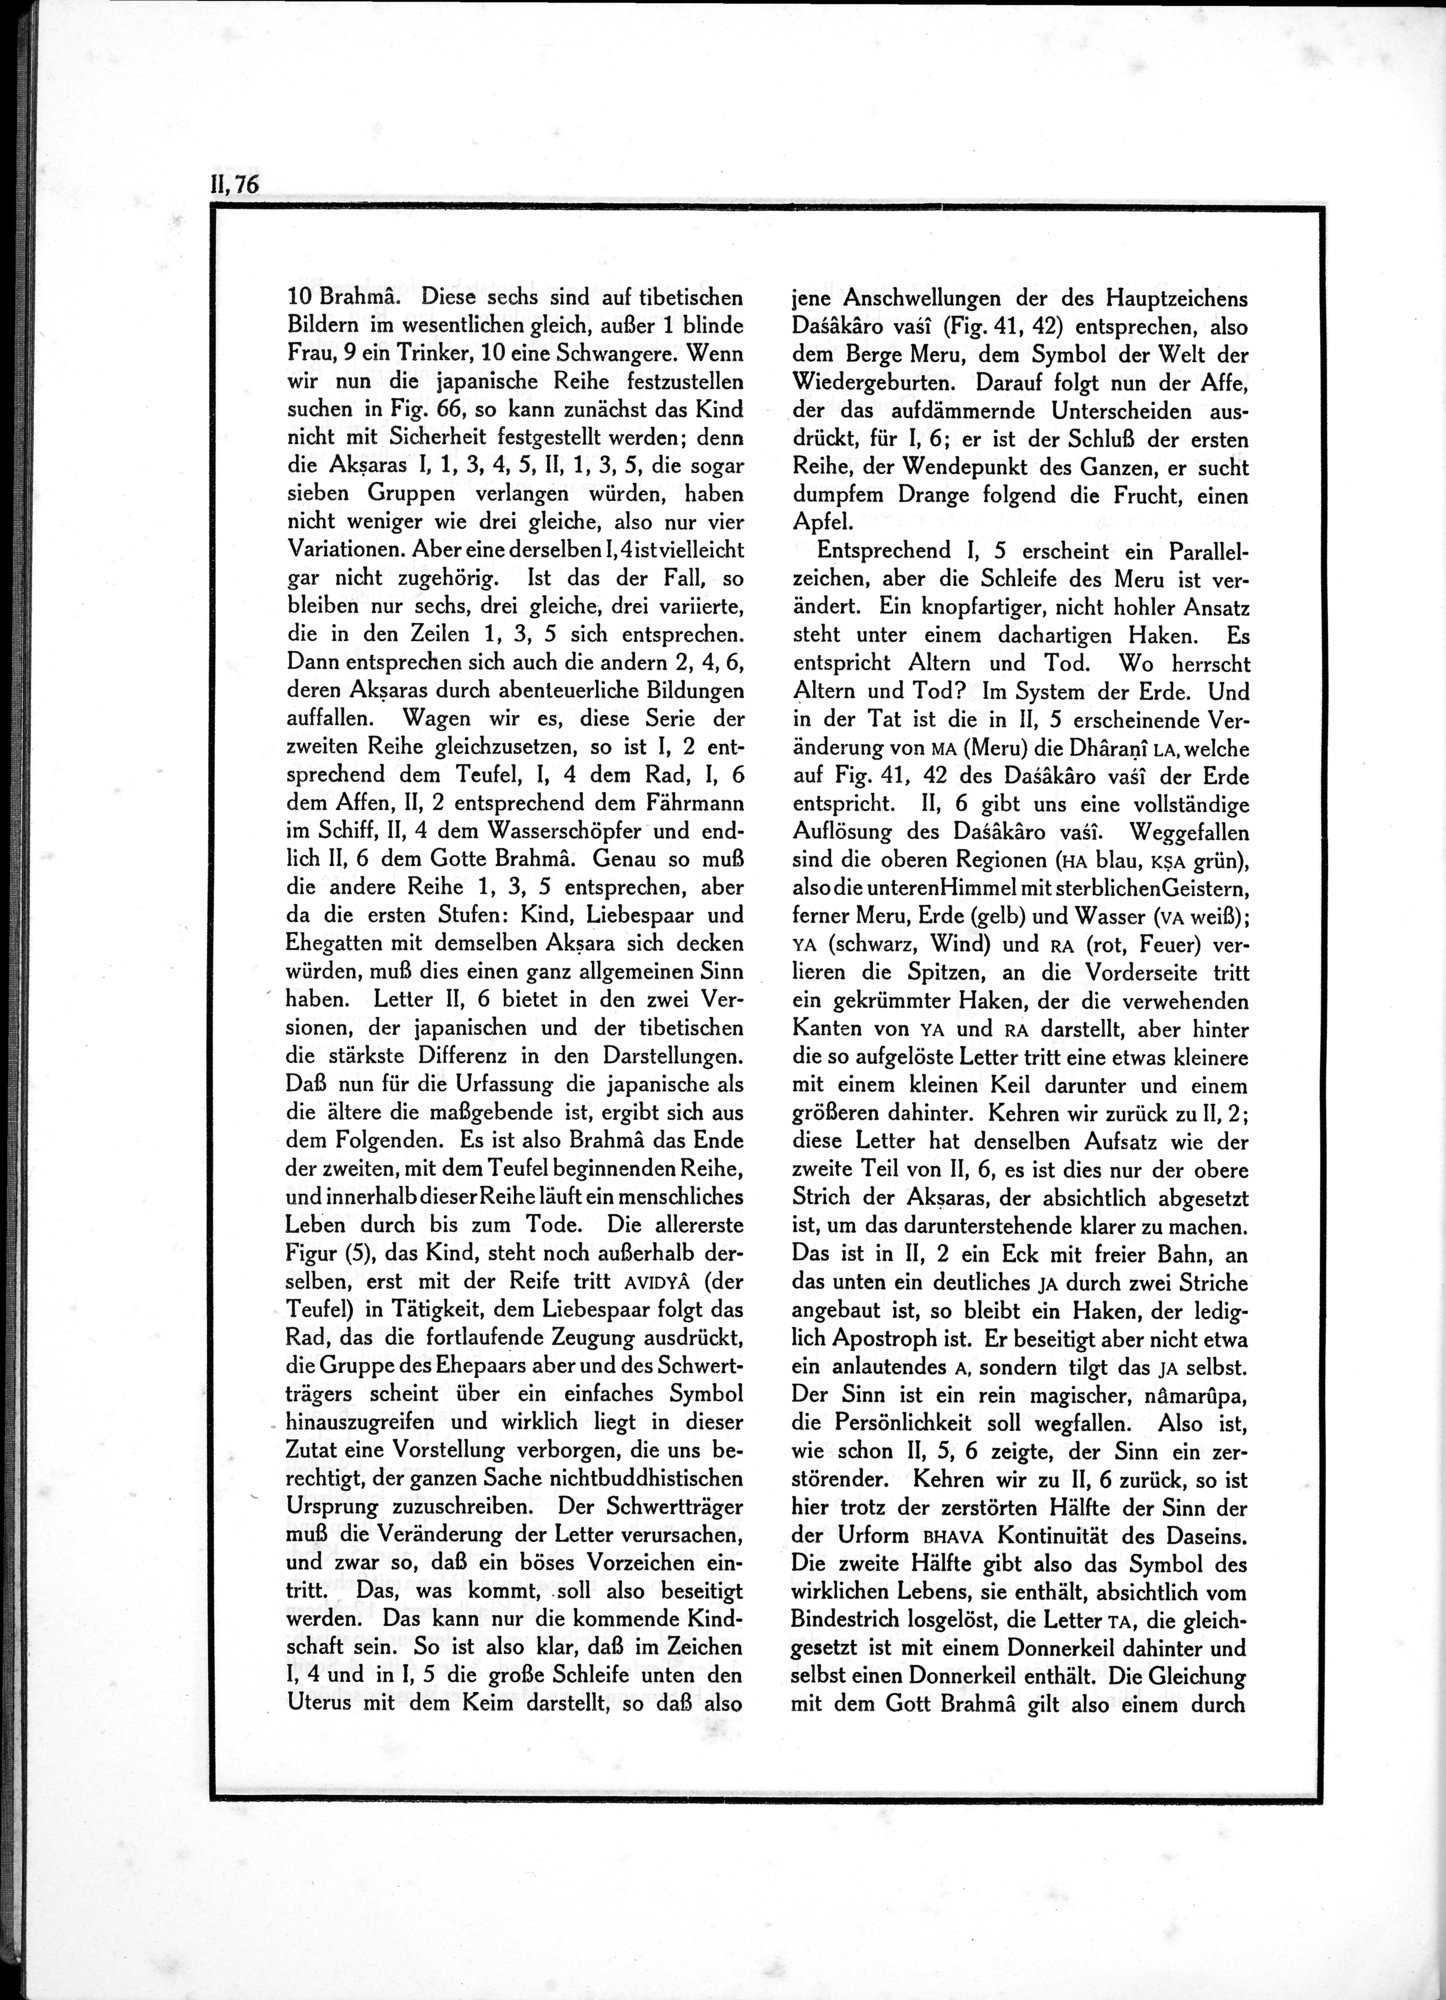 Die Teufel des Avesta und Ihre Beziehungen zur Ikonographie des Buddhismus Zentral-Asiens : vol.1 / Page 532 (Grayscale High Resolution Image)